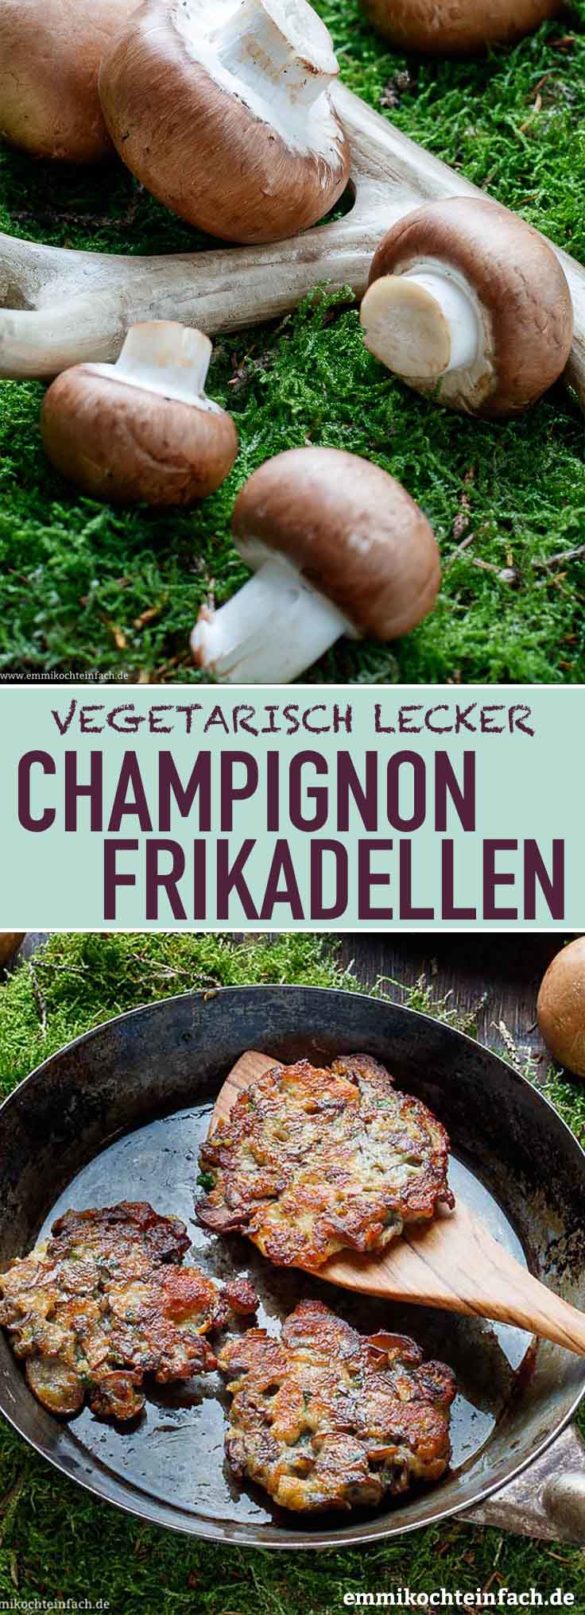 Champignon Frikadellen - vegetarisch lecker - emmikochteinfach